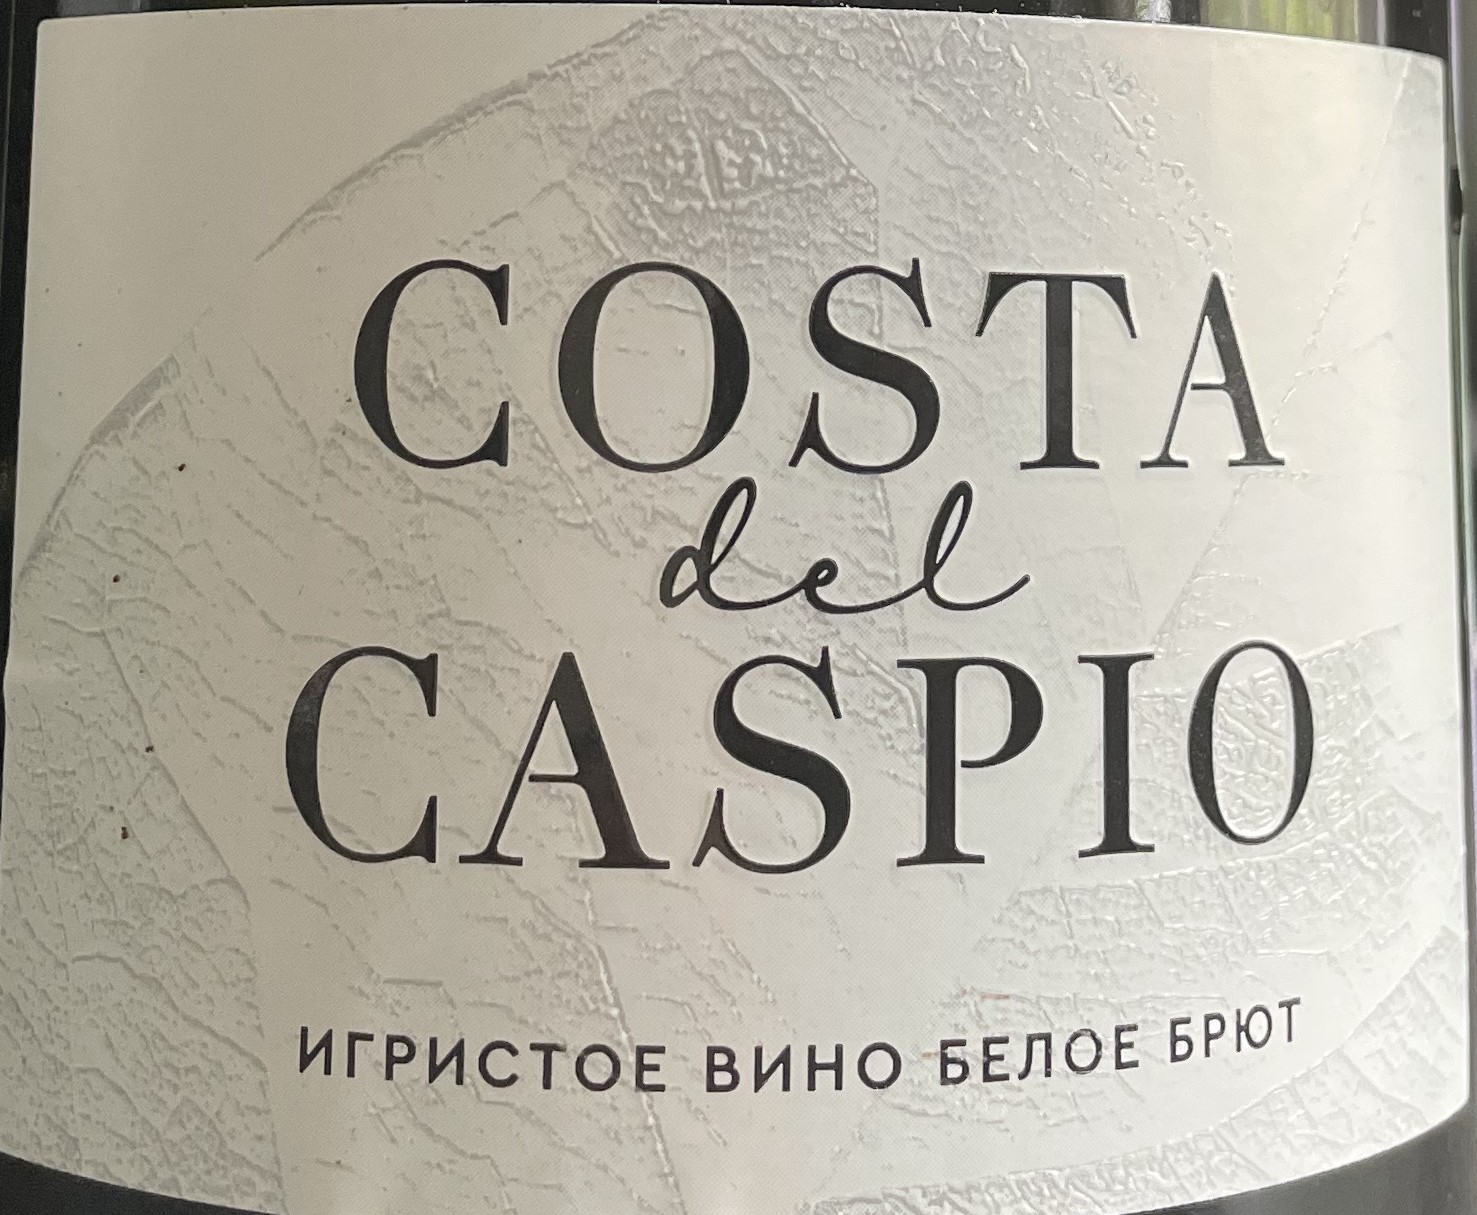 Вина коста. Вино Costa Caspio. Винтодель Каспио. Дель Каспио вино игристое. Шампанское Коста Каспио.